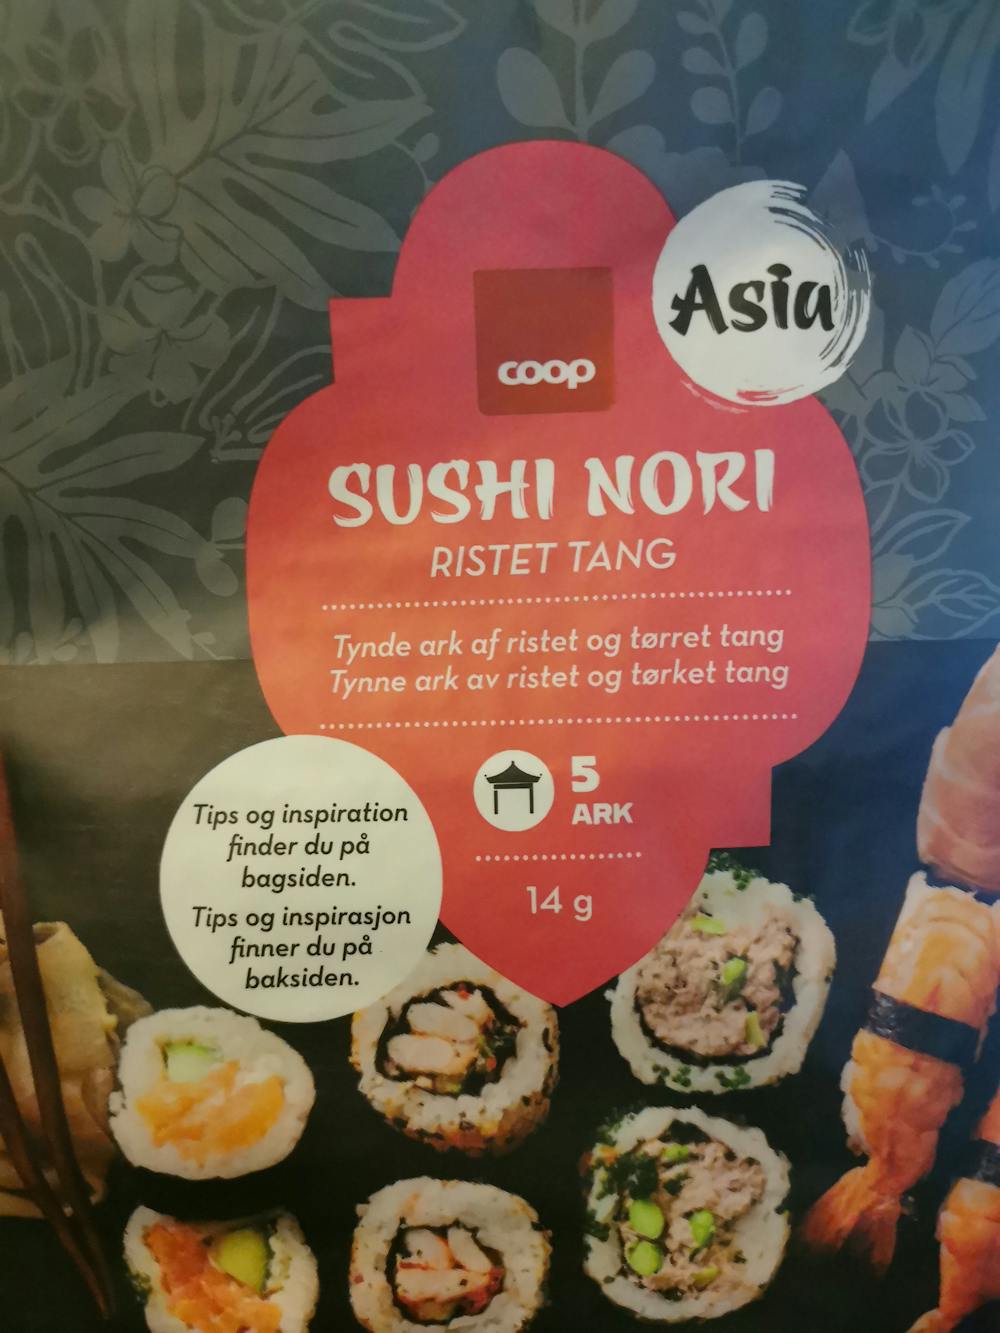 Sushi nori, Coop